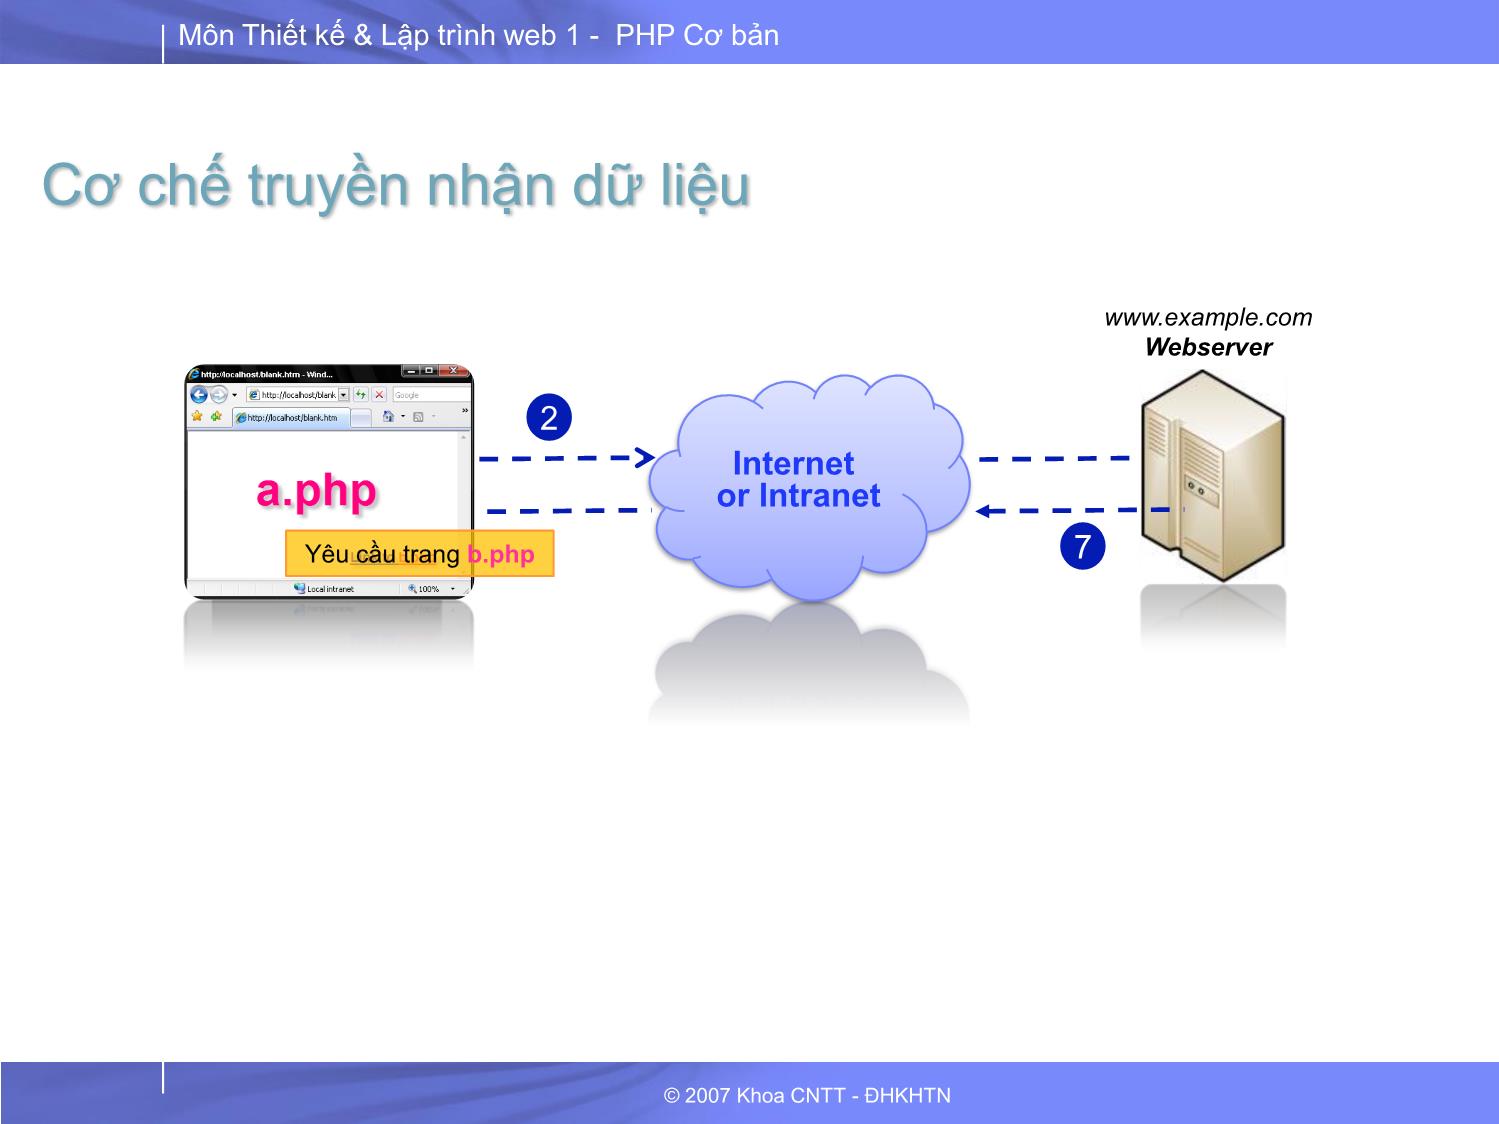 Lập trình và thiết kế Web 1 - Bài 8: PHP truyền nhận dữ liệu giữa các trang web trang 5